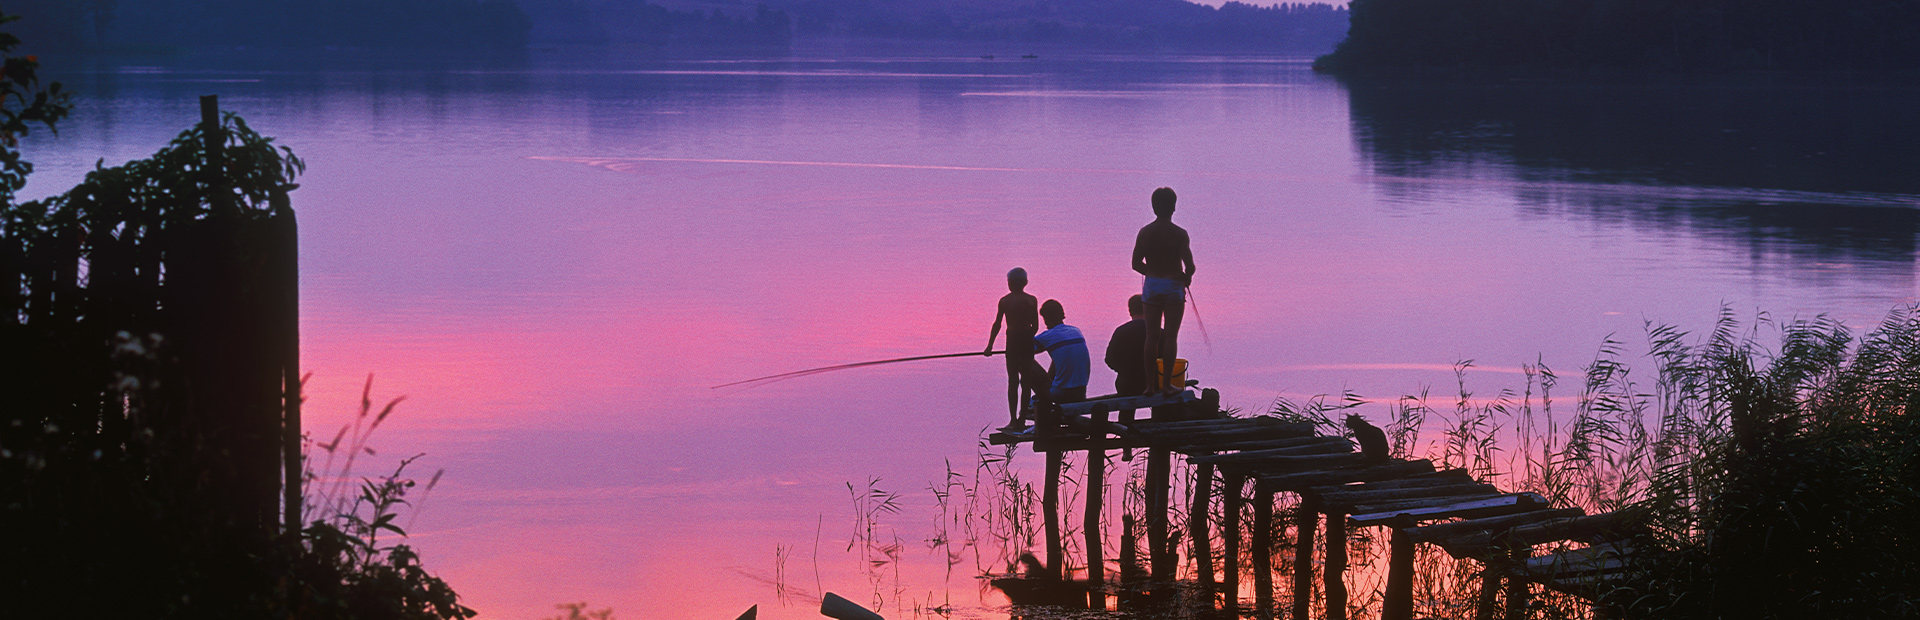 Zdjęcie przedstawia czworo ludzi w różnym wieku stojących na małym pomoście. Ludzie łowią ryby przy zachodzie słońca.